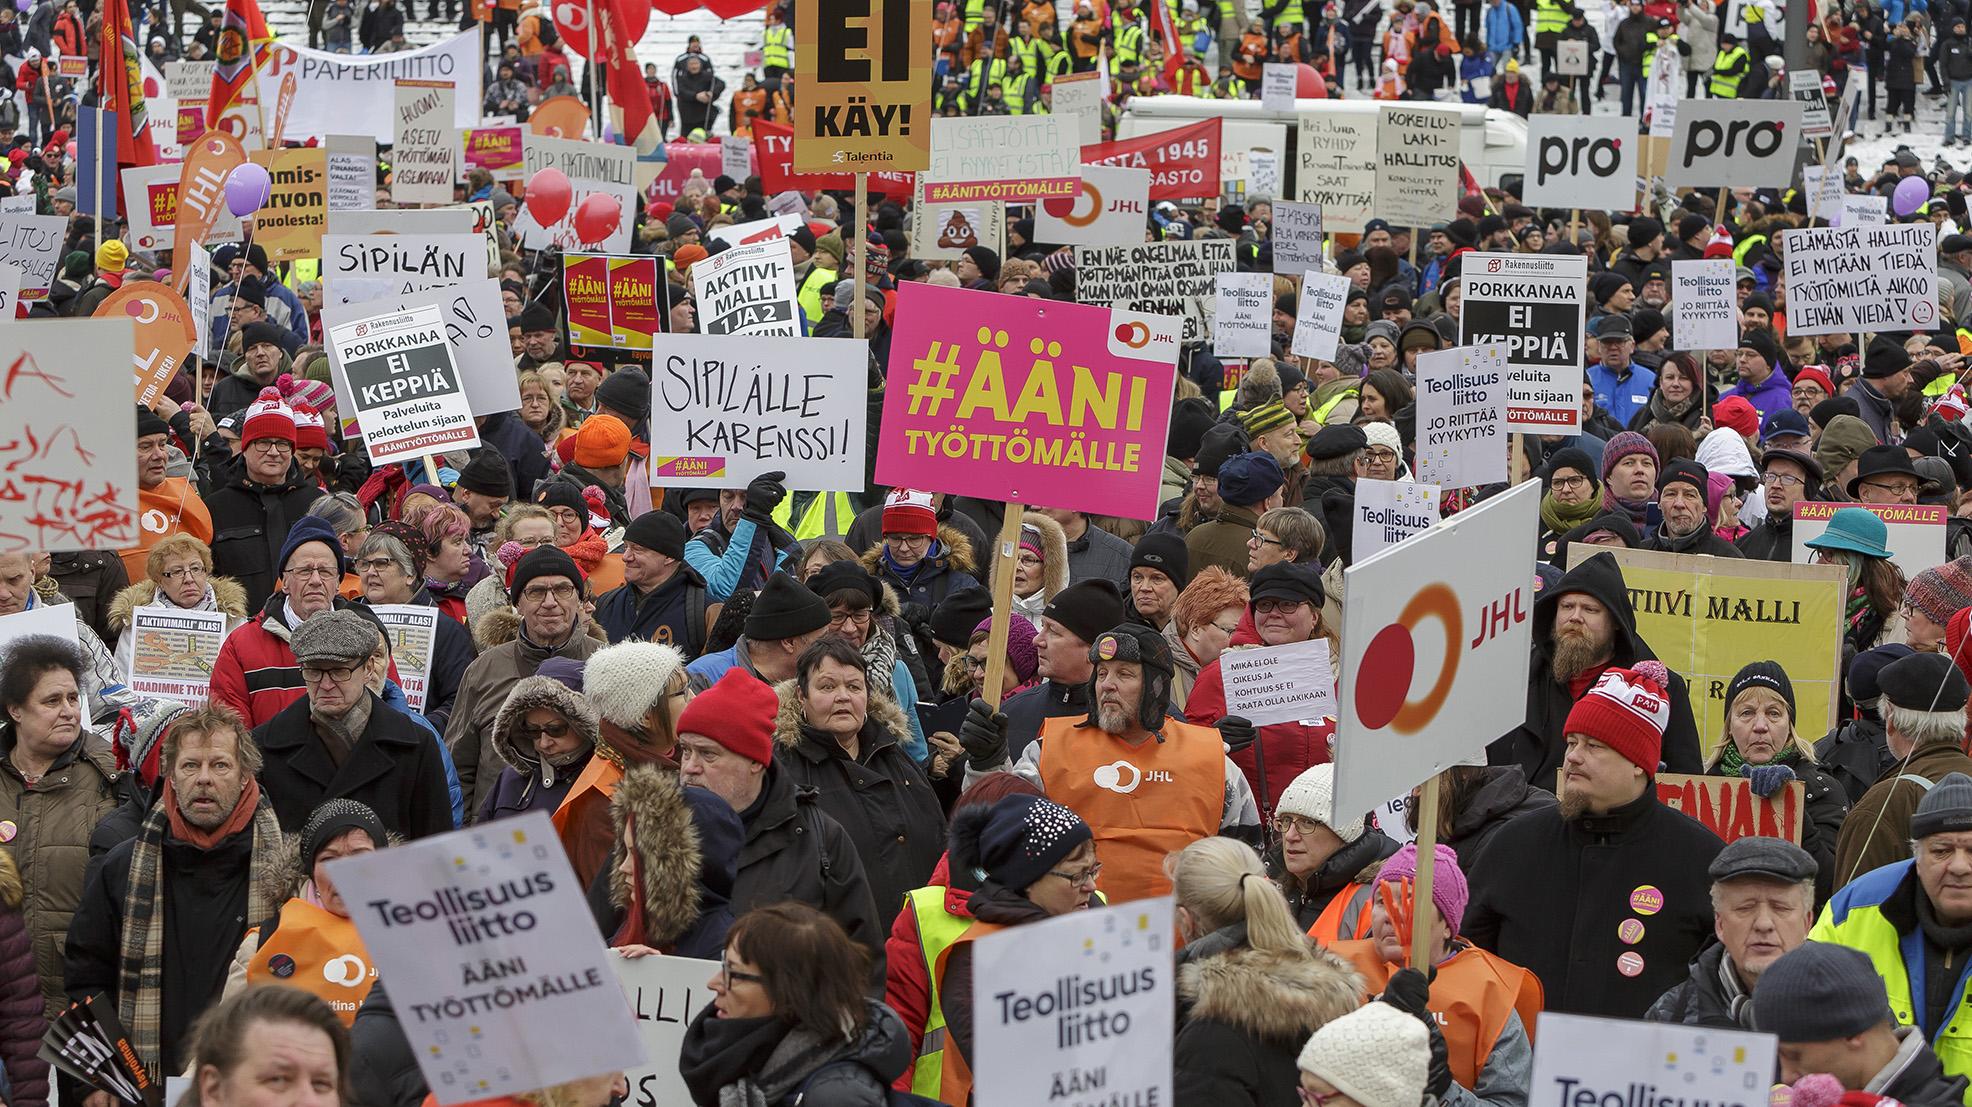 SAK järjesti Ääni työttömälle -mielenilmauksen Senaatintorilla helmikuussa 2018 protestiksi hallituksen ajamalle aktiivimallille. Kuva Patrik Lindström.